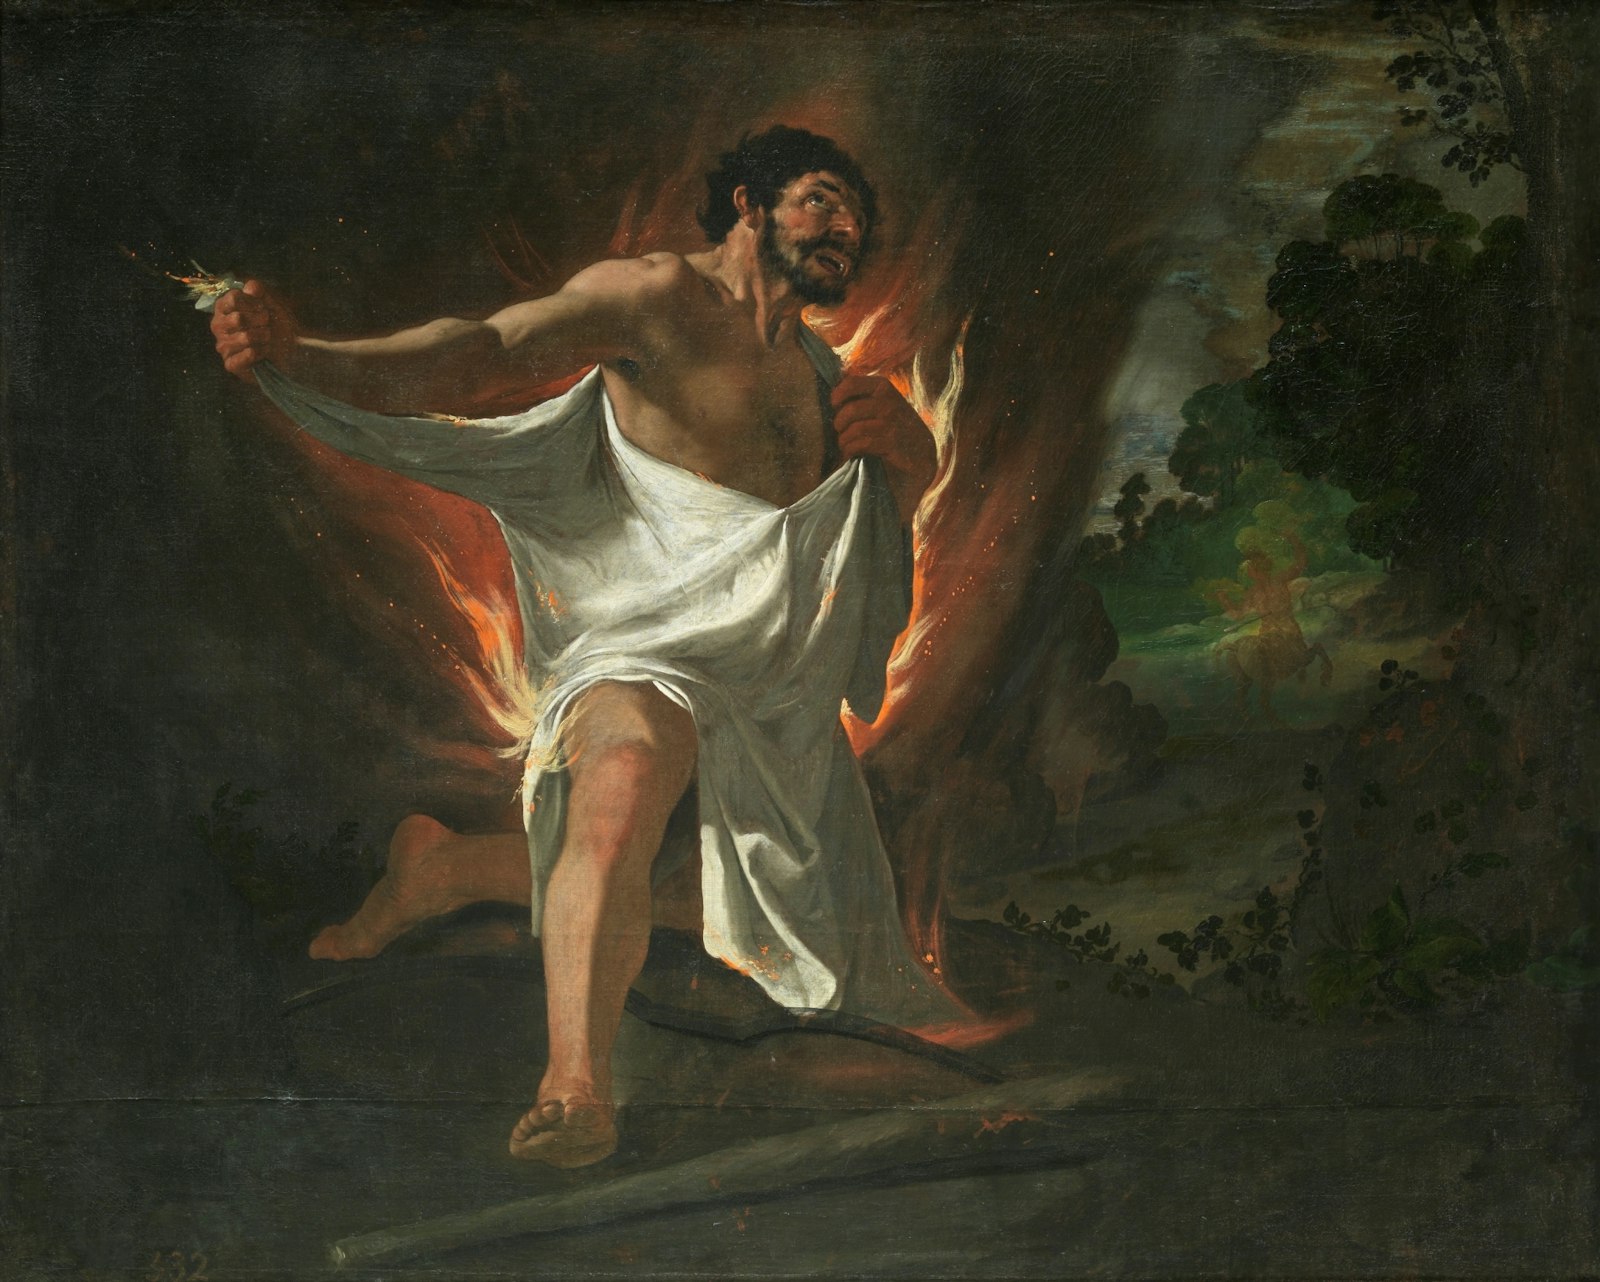 The Death of Hercules by Francisco de Zurbaran, 1634